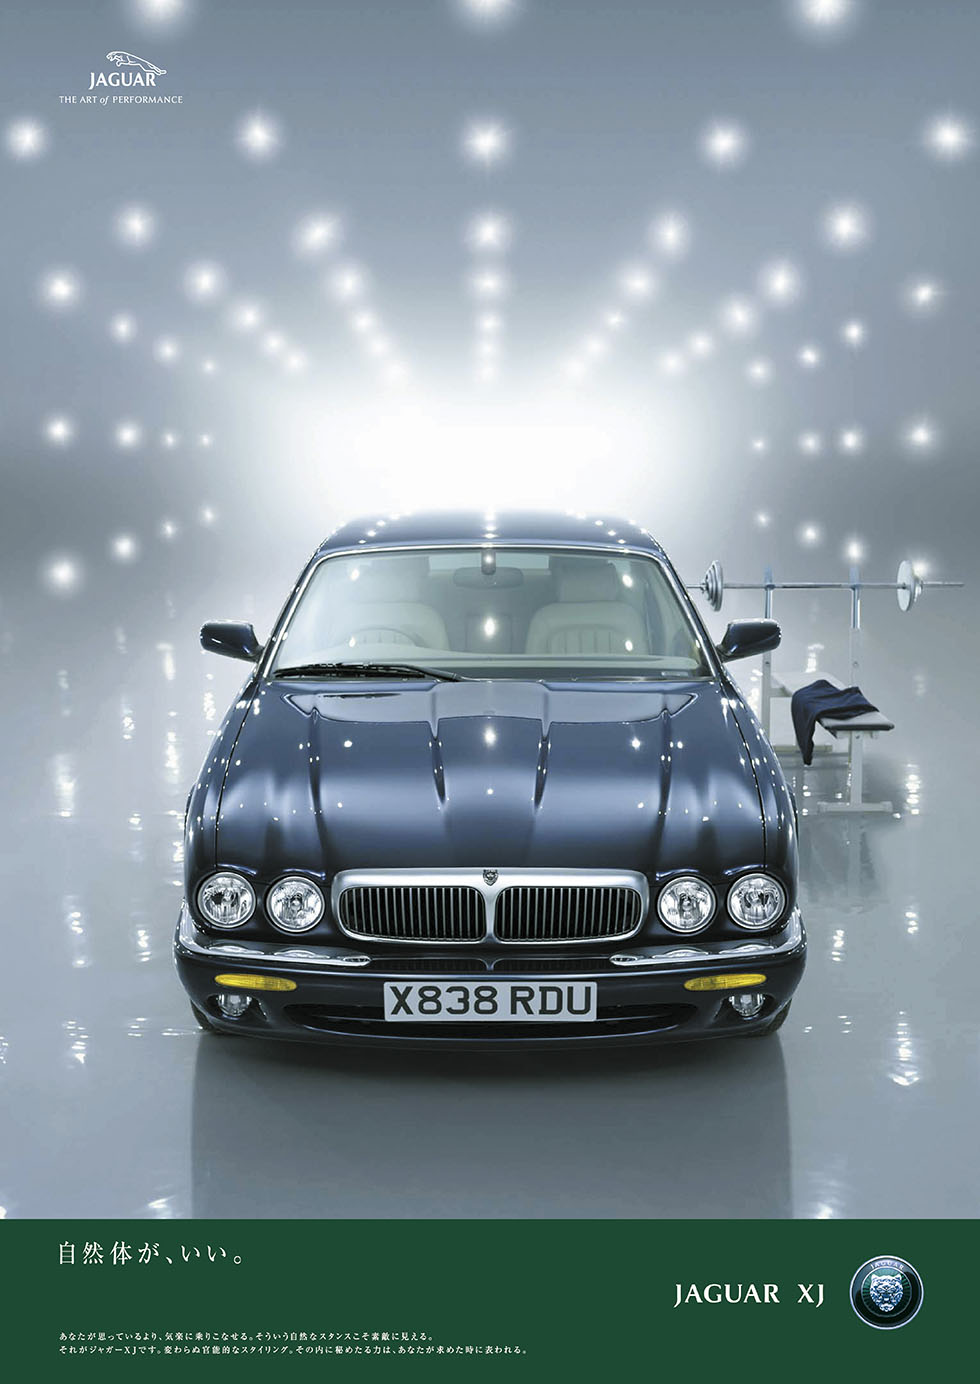 Jaguar Japan「Jaguar XJ 」企画・撮影、ポスター広告デザイン キャッチコピーは「自然体が、いい。」